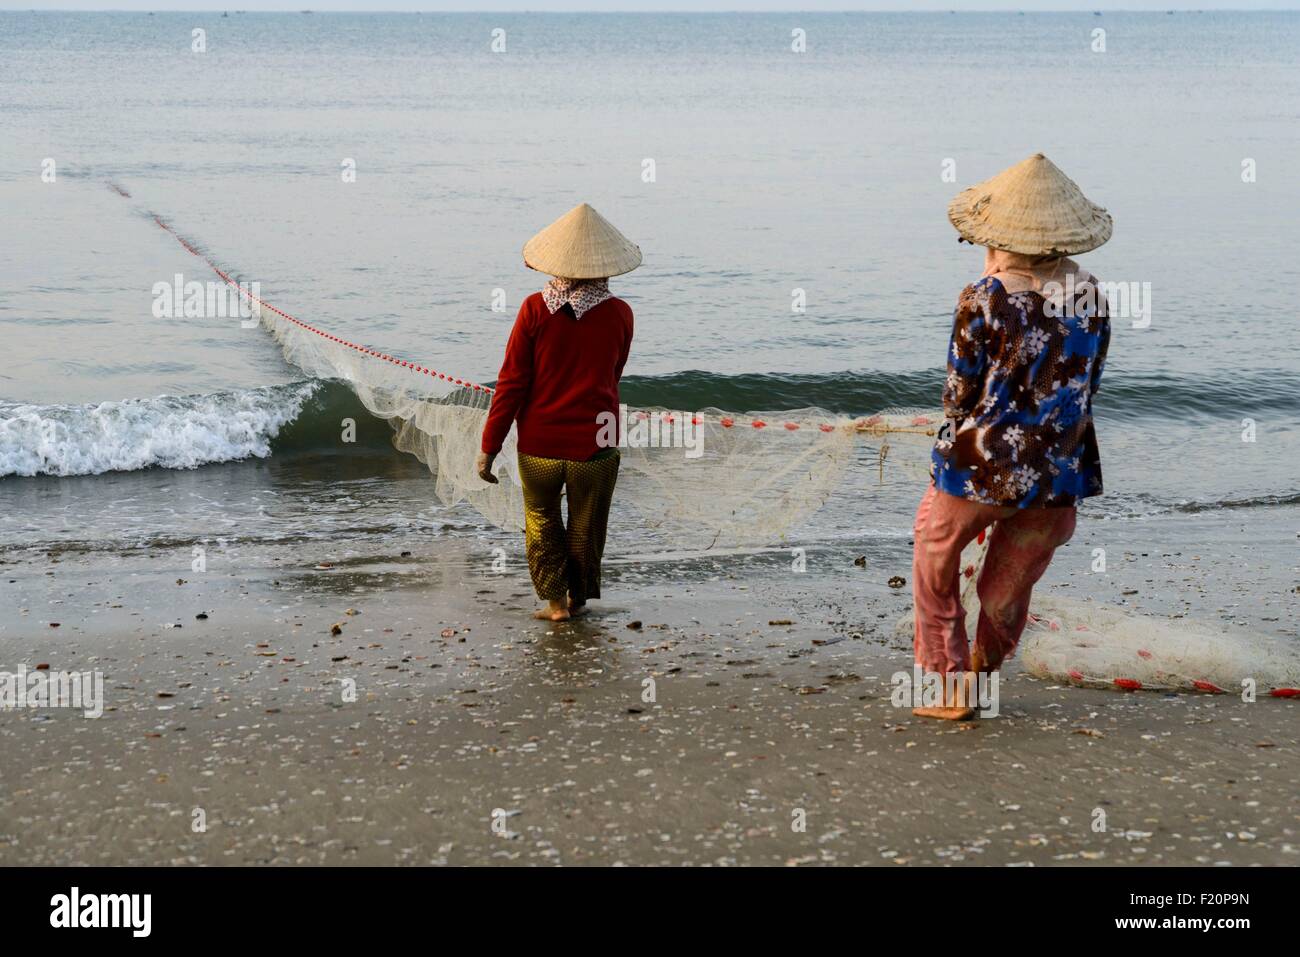 Vietnam, Mui Ne, hauling fish net on the beach Stock Photo